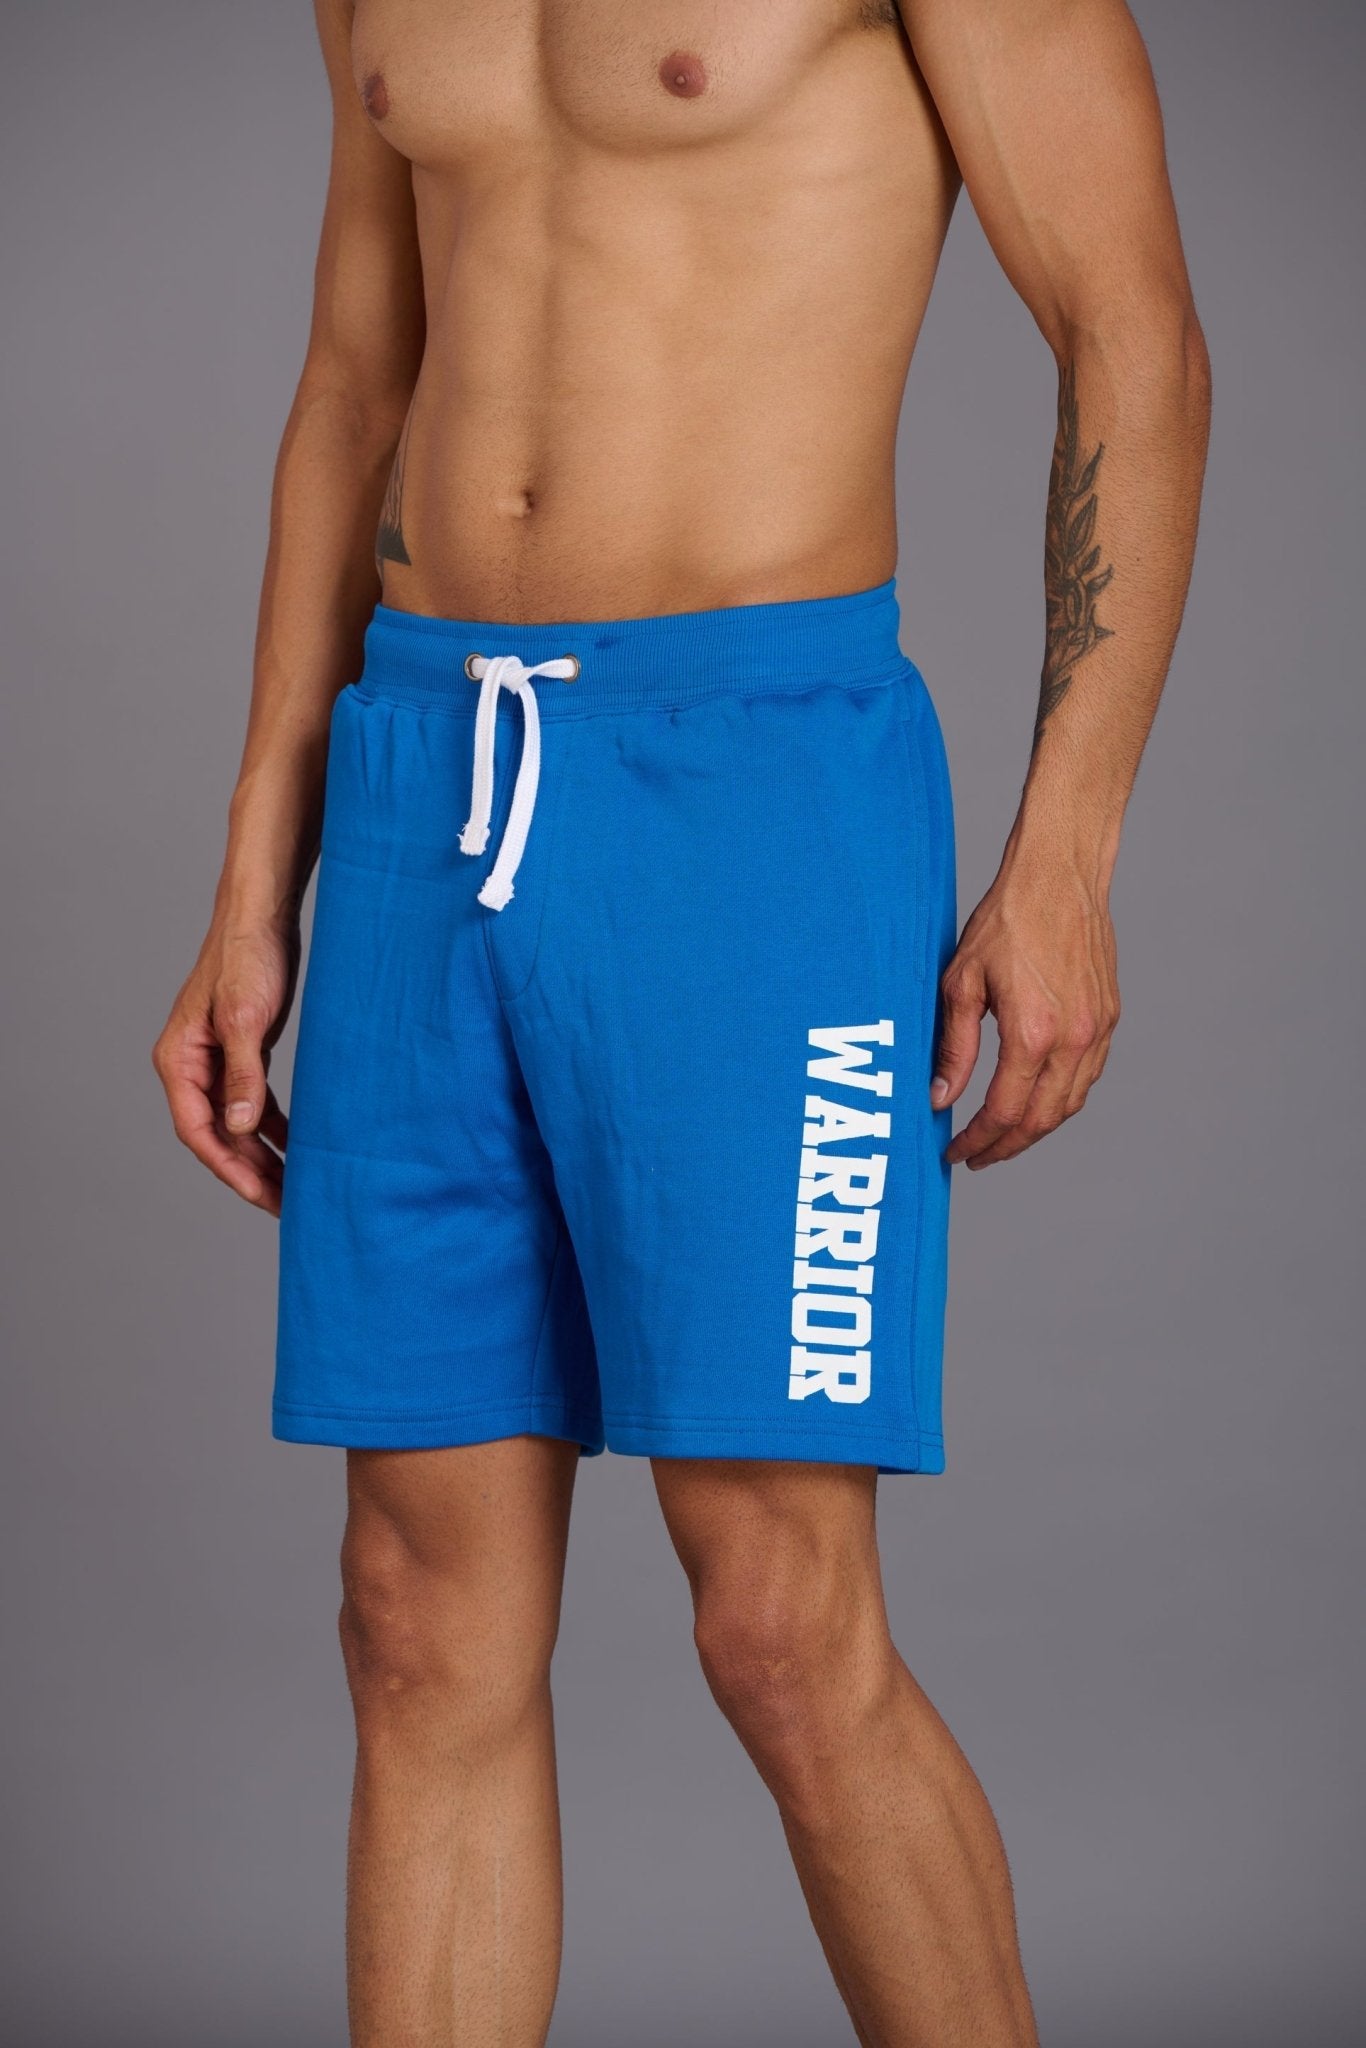 Warrior Printed Royal Blue Shorts for Men - Go Devil